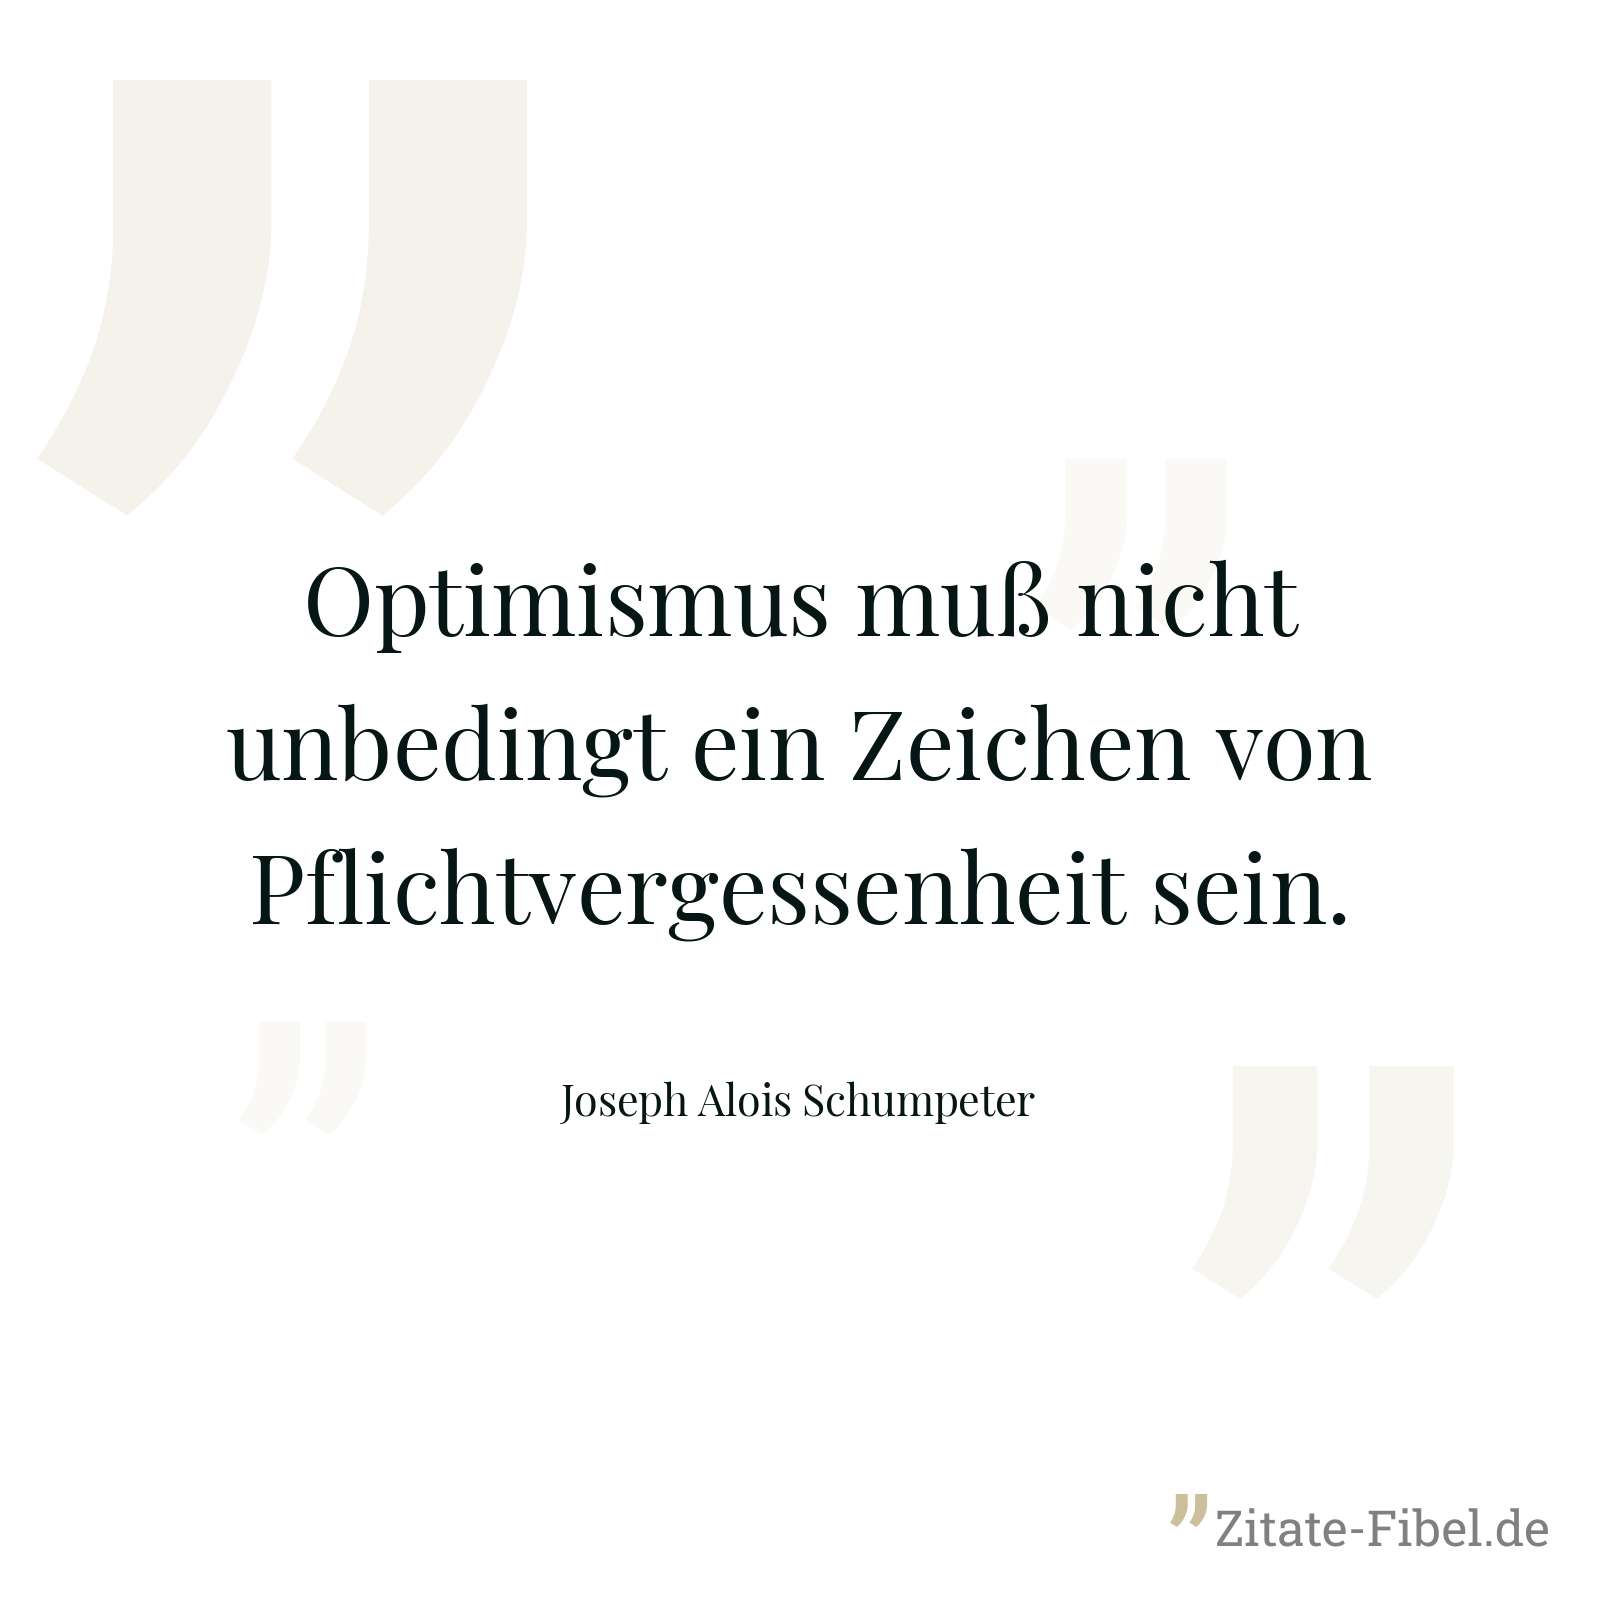 Optimismus muß nicht unbedingt ein Zeichen von Pflichtvergessenheit sein. - Joseph Alois Schumpeter